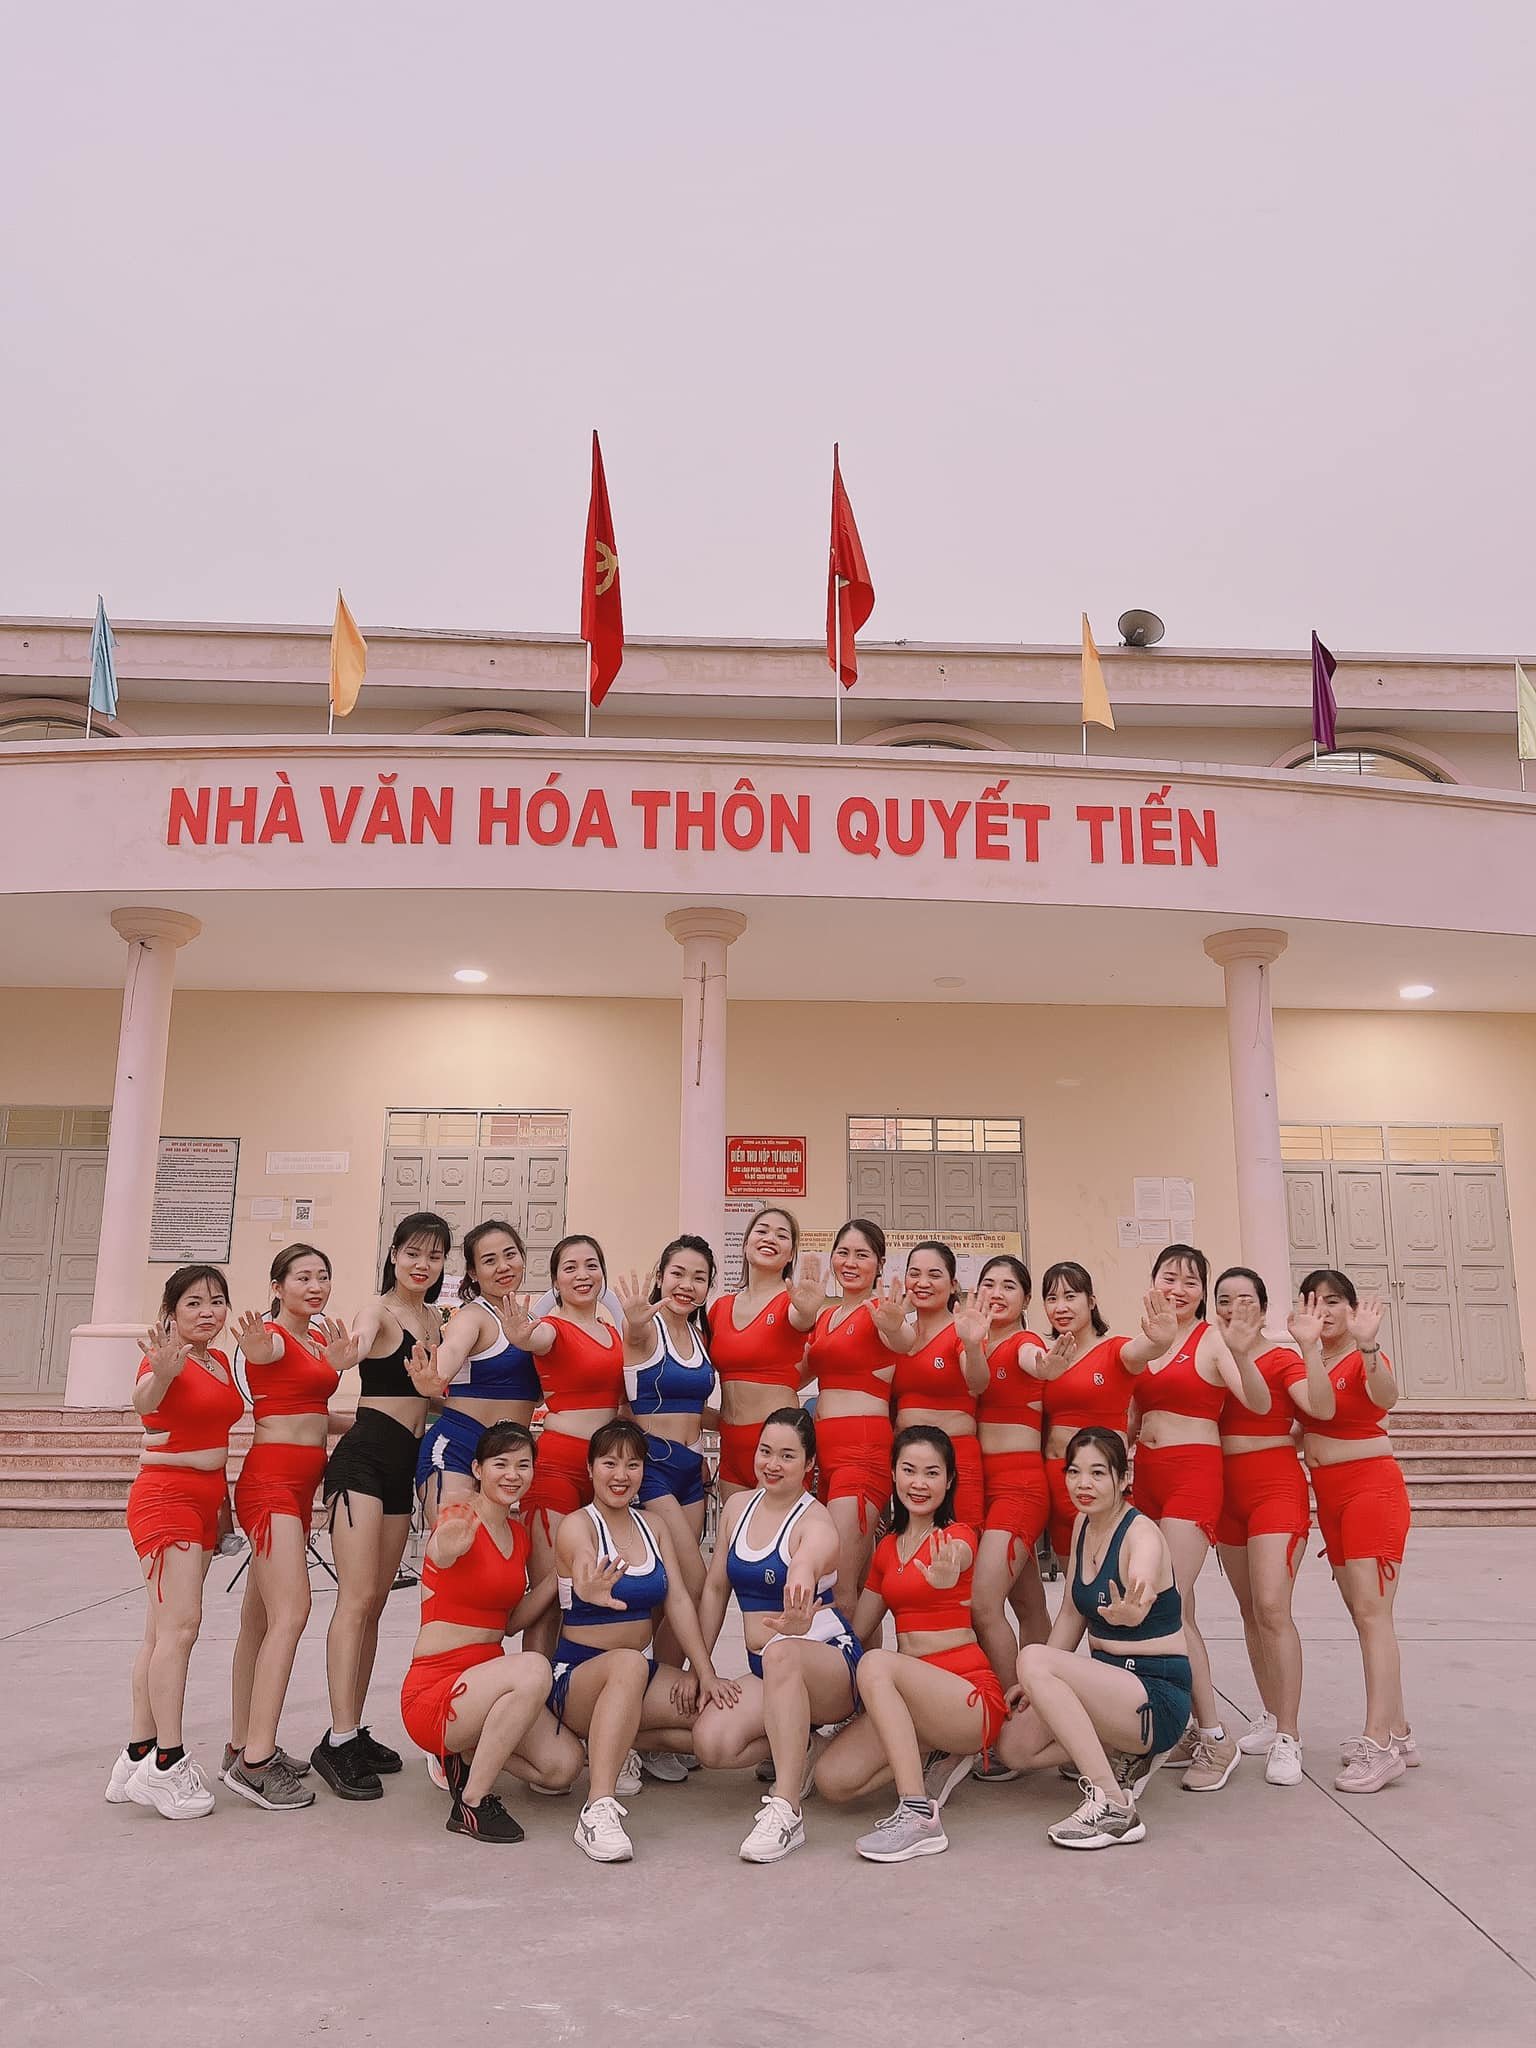 Bảo Ngọc Aerobic nỗ lực vực dậy phong trào Aerobic tại Việt Nam - Ảnh 2.